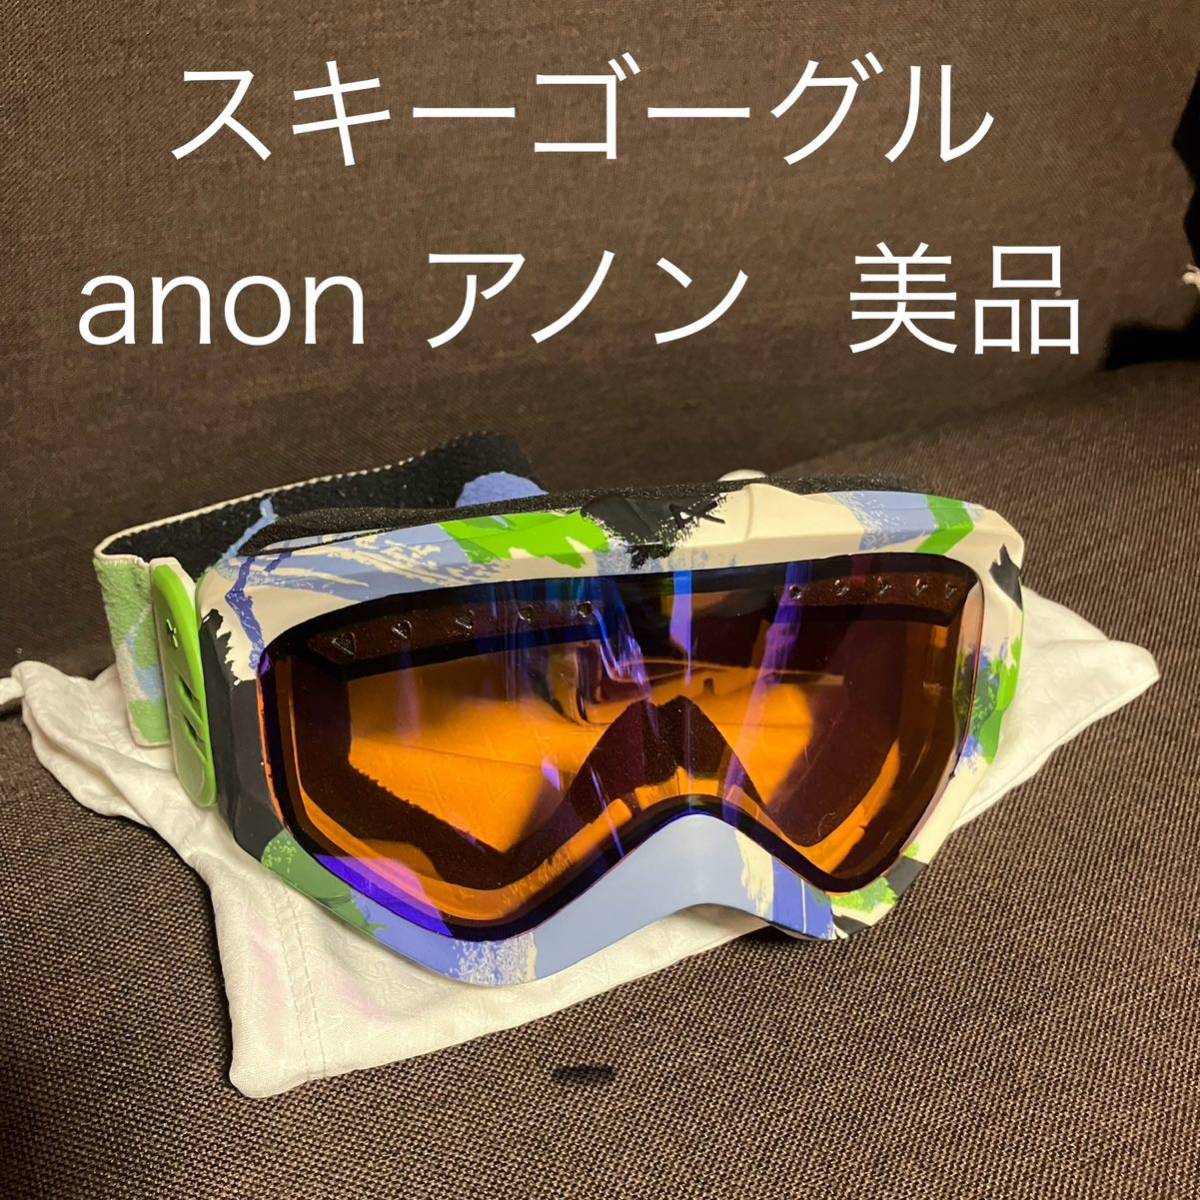 anon スキーゴーグル スノーボードゴーグル アノン バートン Burton